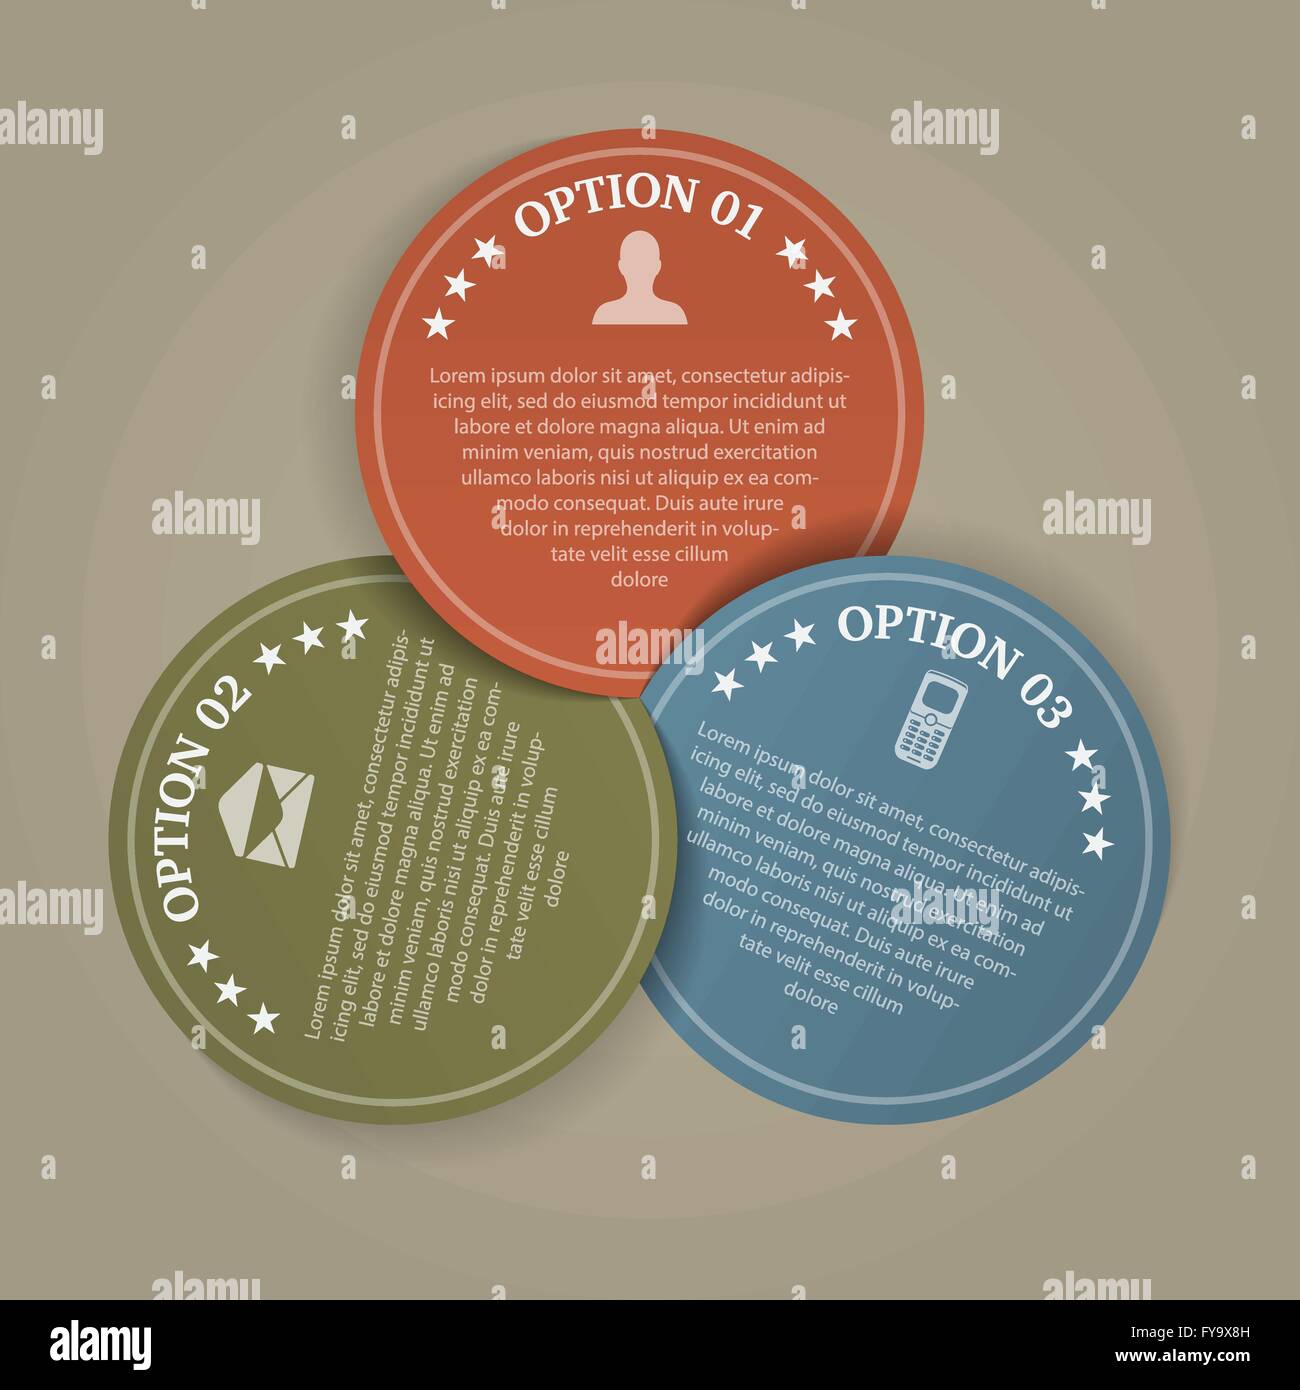 Una infografica illustrazione di 3 cerchi di colore con i passi o le scelte Illustrazione Vettoriale